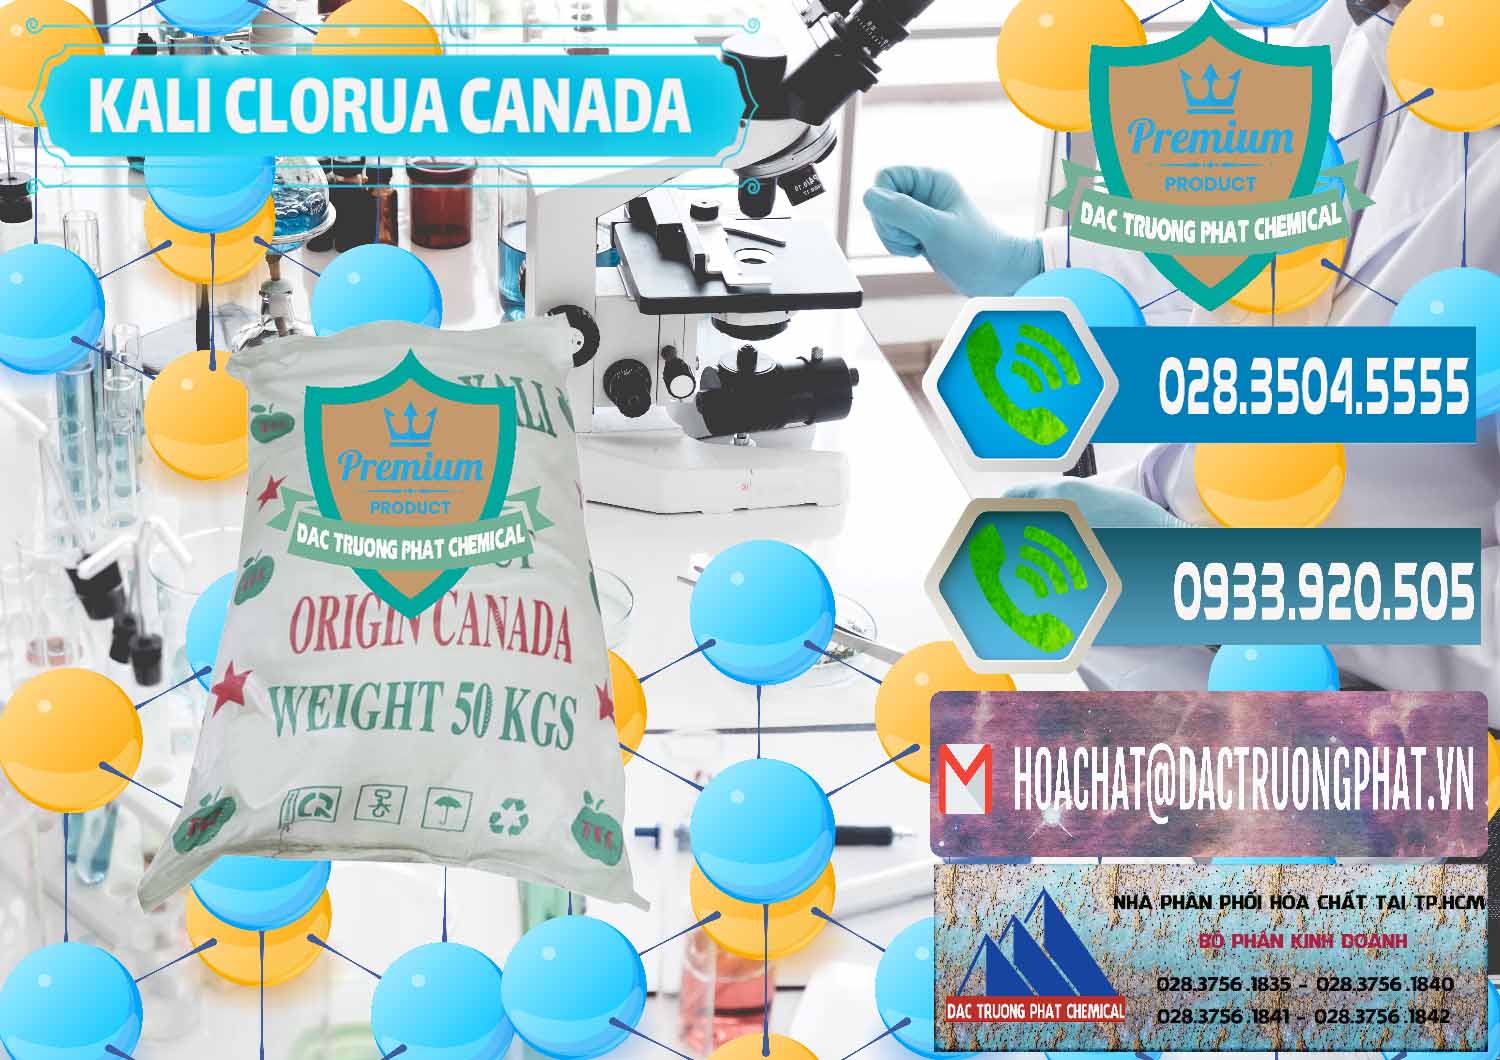 Đơn vị kinh doanh & bán KCL – Kali Clorua Trắng Canada - 0437 - Nơi chuyên cung cấp ( bán ) hóa chất tại TP.HCM - congtyhoachat.net